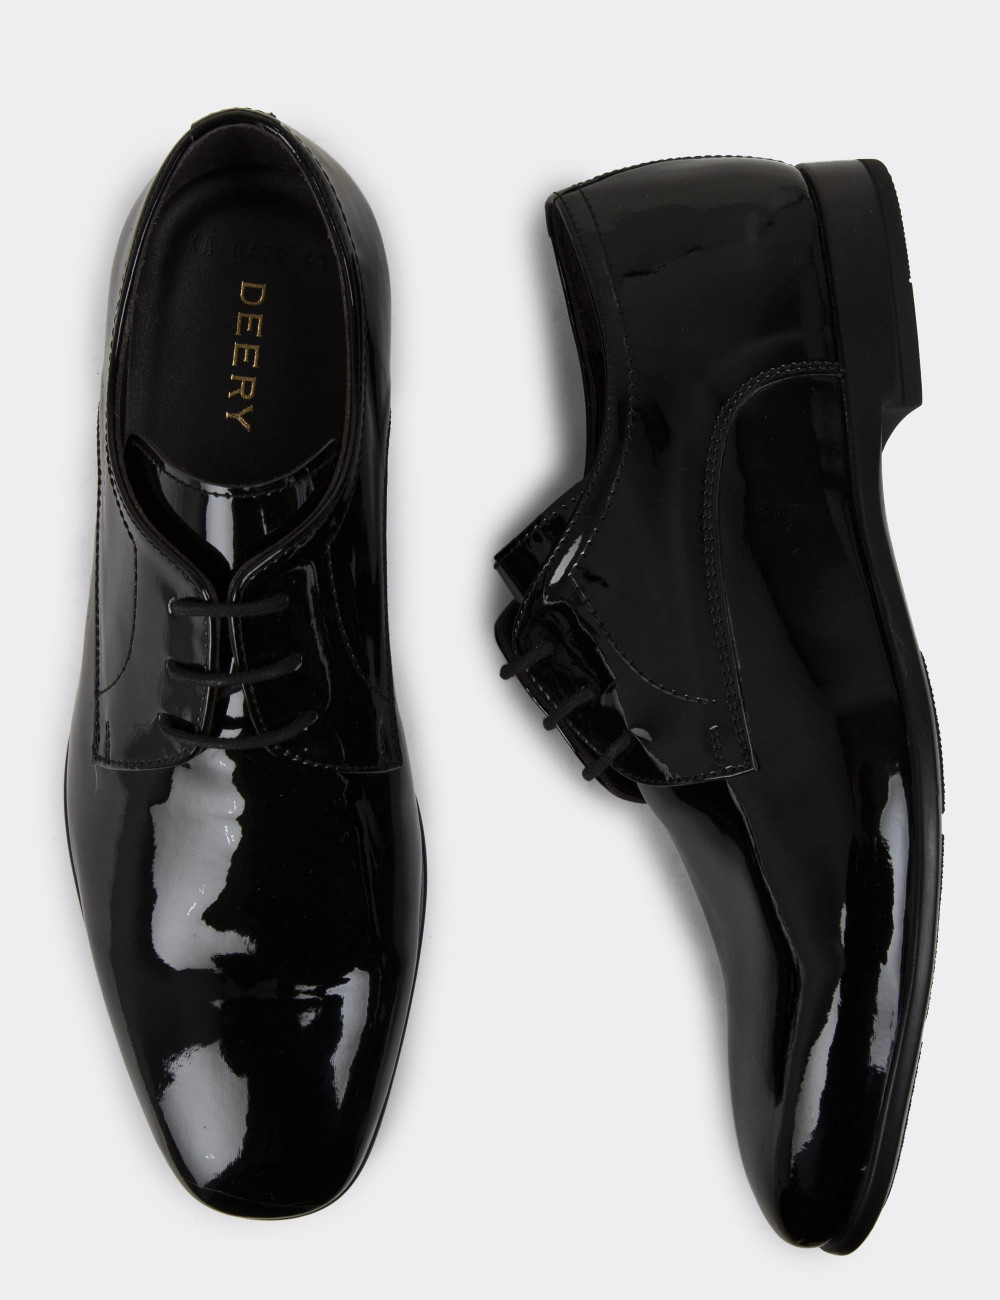 Siyah Rugan Erkek Klasik Ayakkabı - 00479MSYHC05